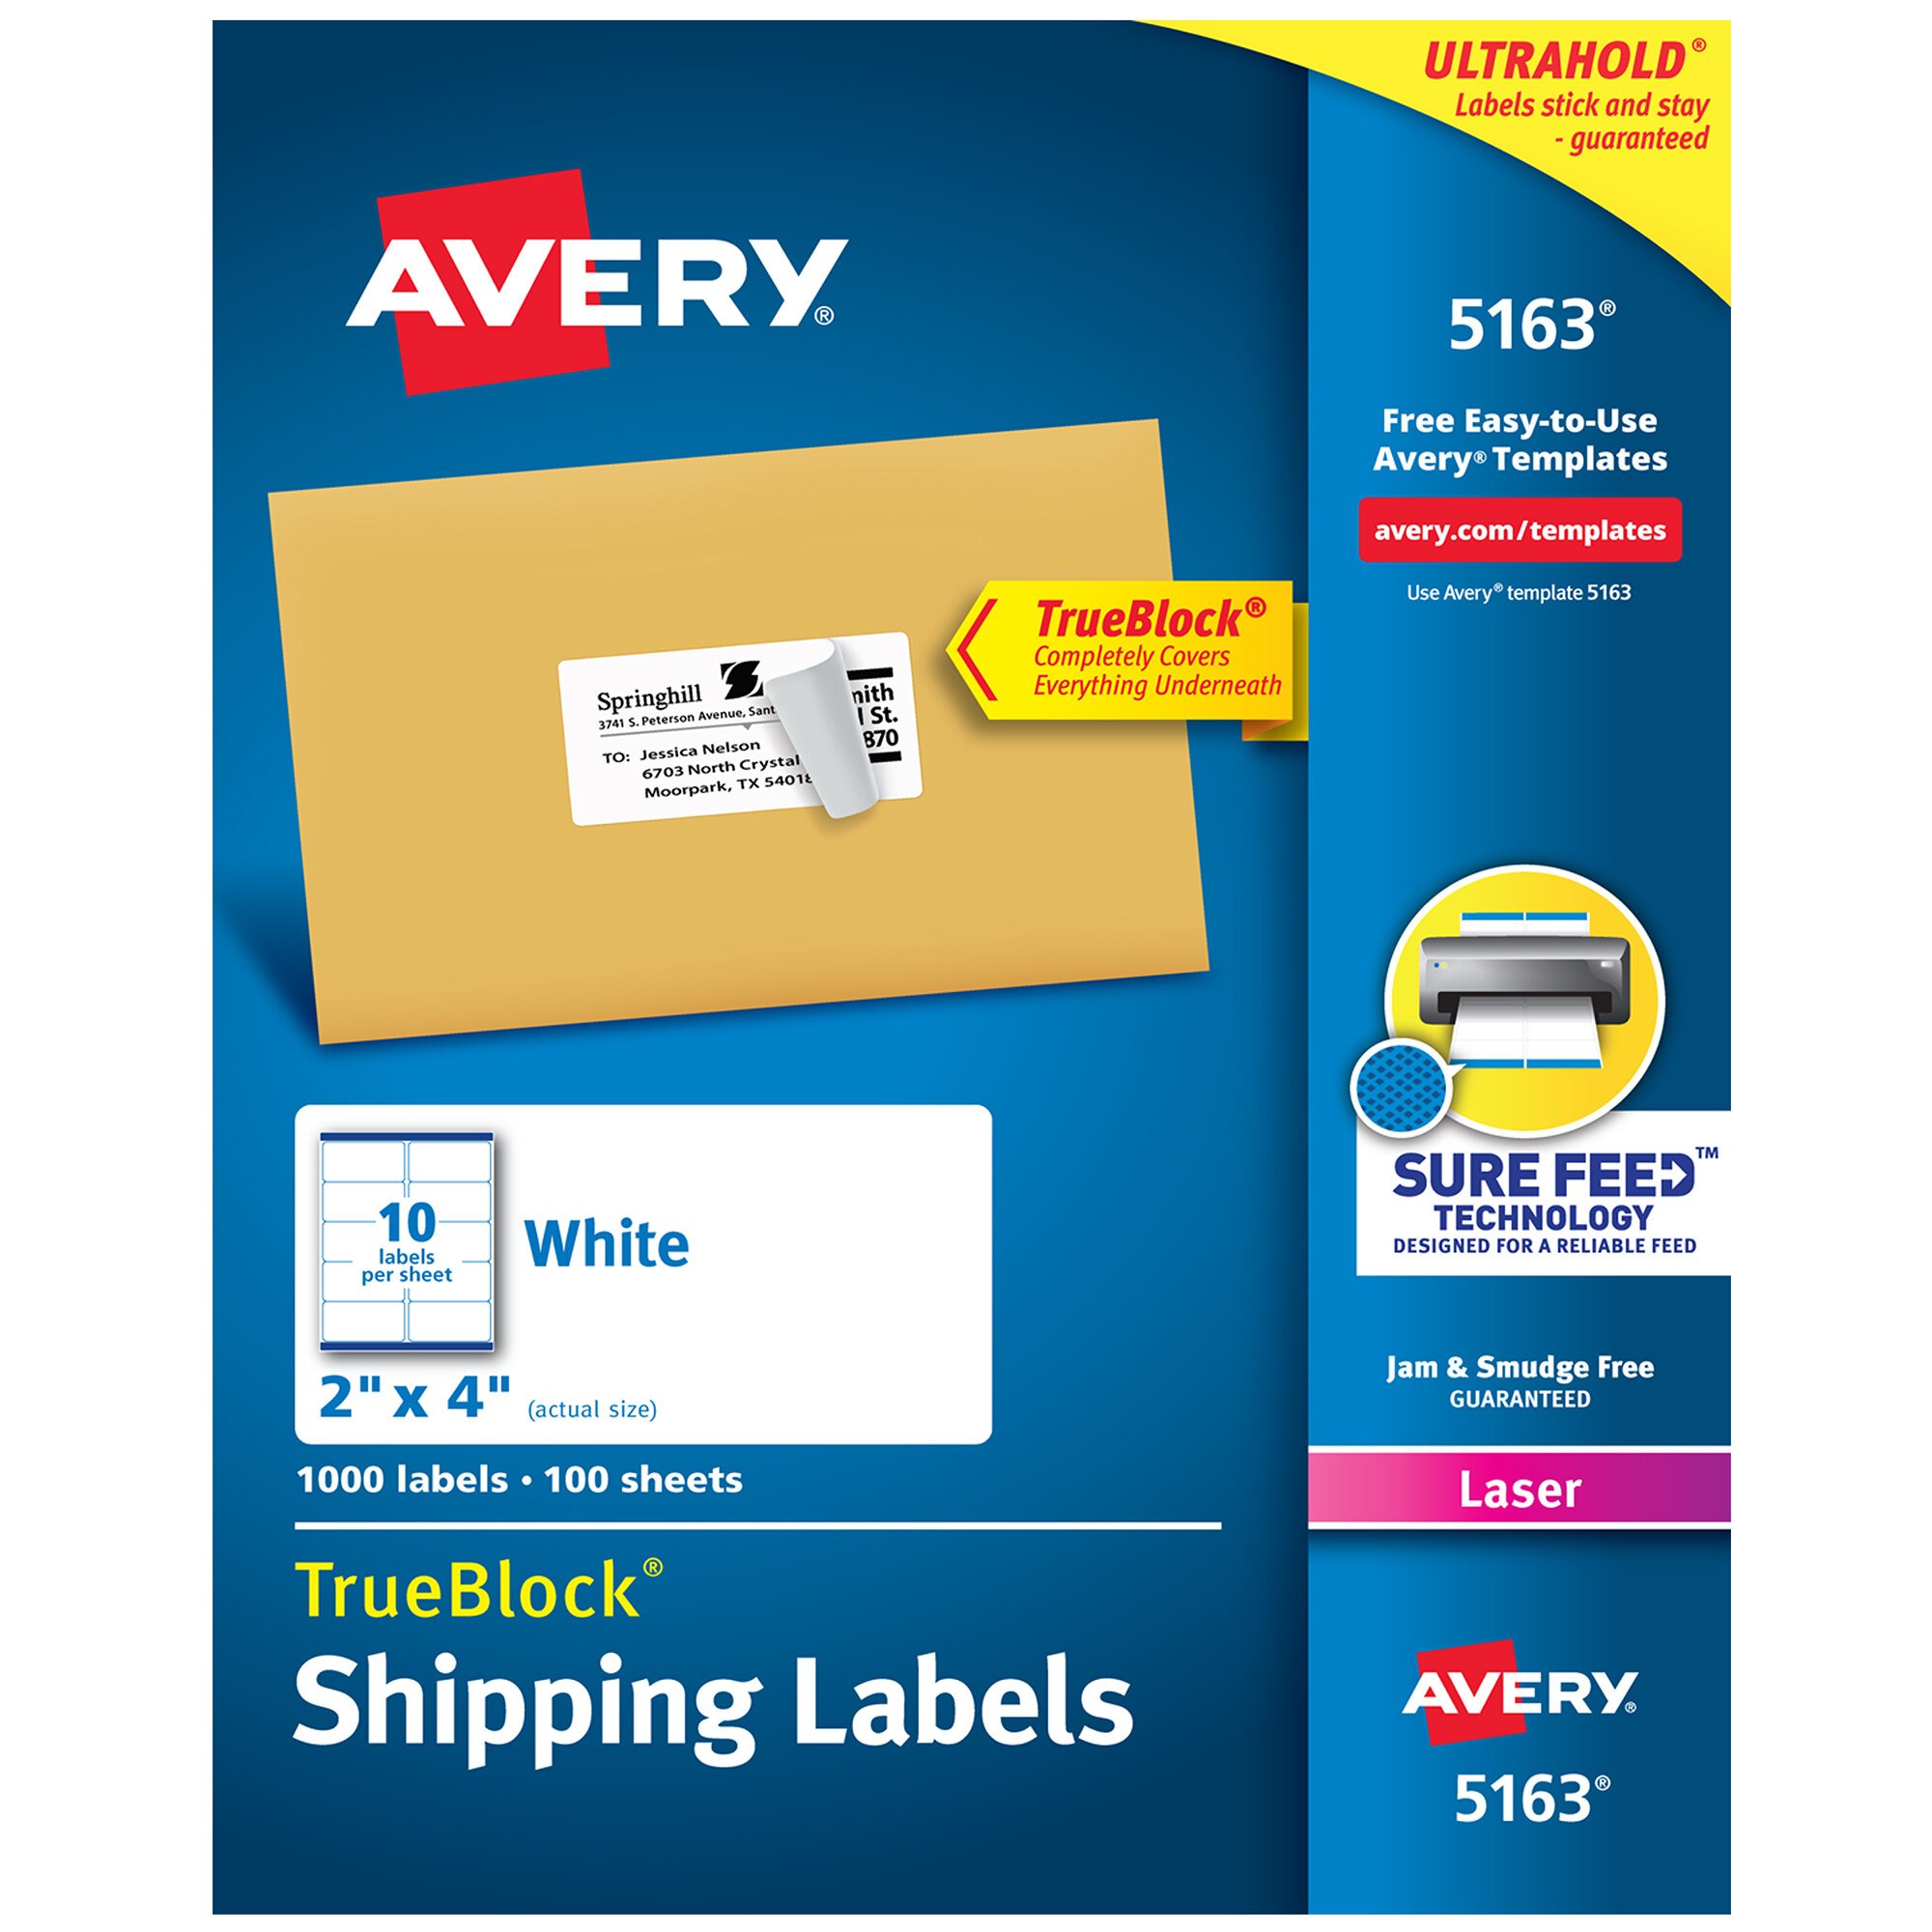 avery-5163-templates